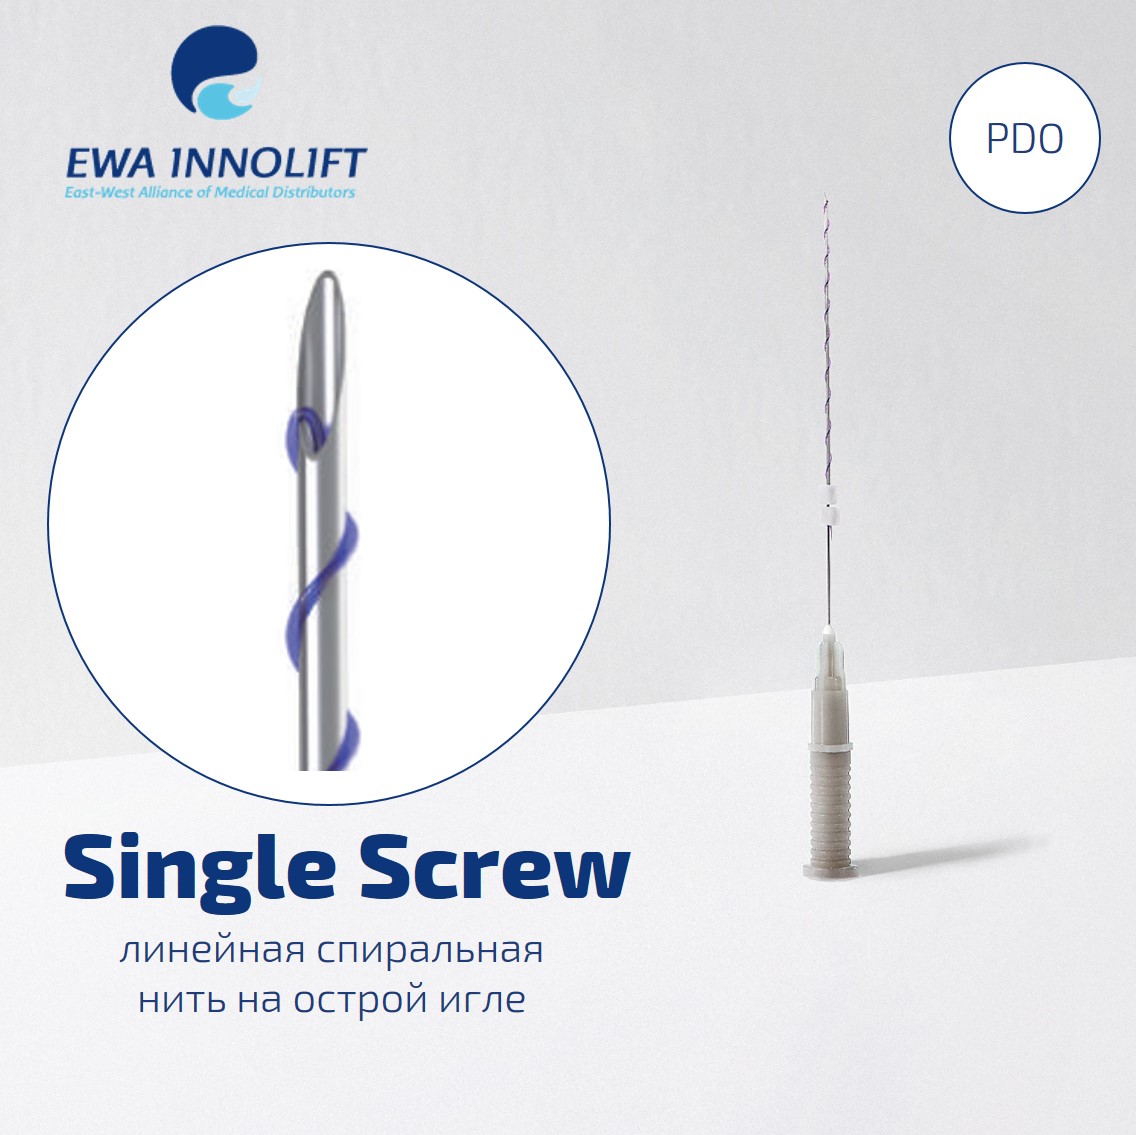 Нить из полидиоксанона обычная на полой игле Спираль /  Single Screw (Sharp Needle) PDO